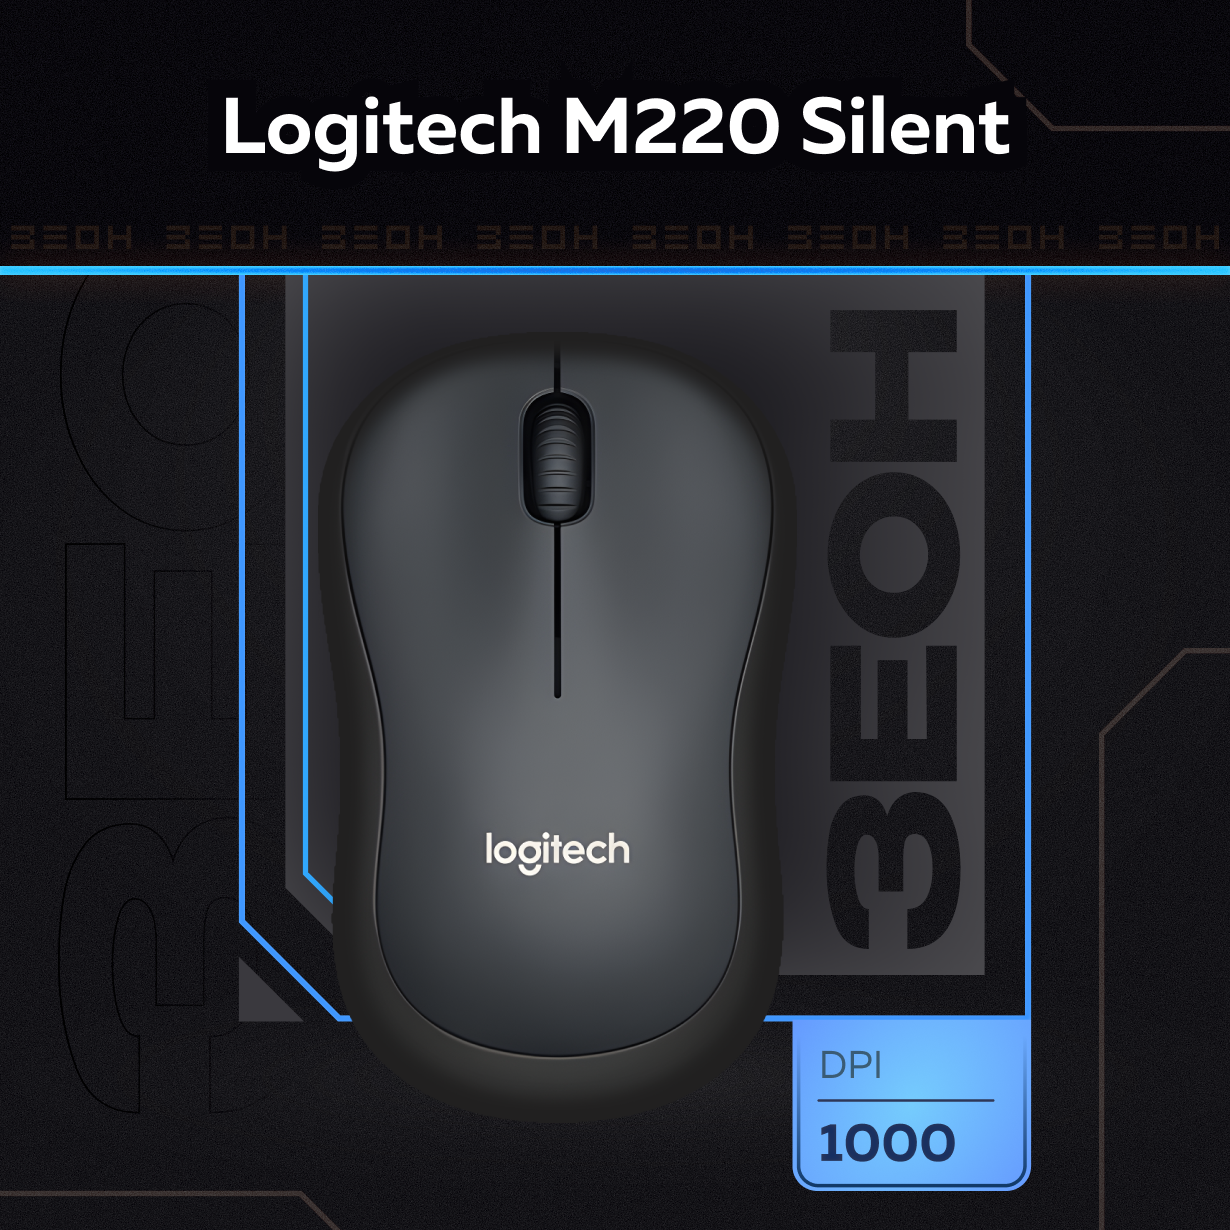 Мышь беспроводная Logitech M220 Silent Charcoal 910-004878 черная оптическая 1000dpi 24 GHz USB-ресивер бесшумная (066199)